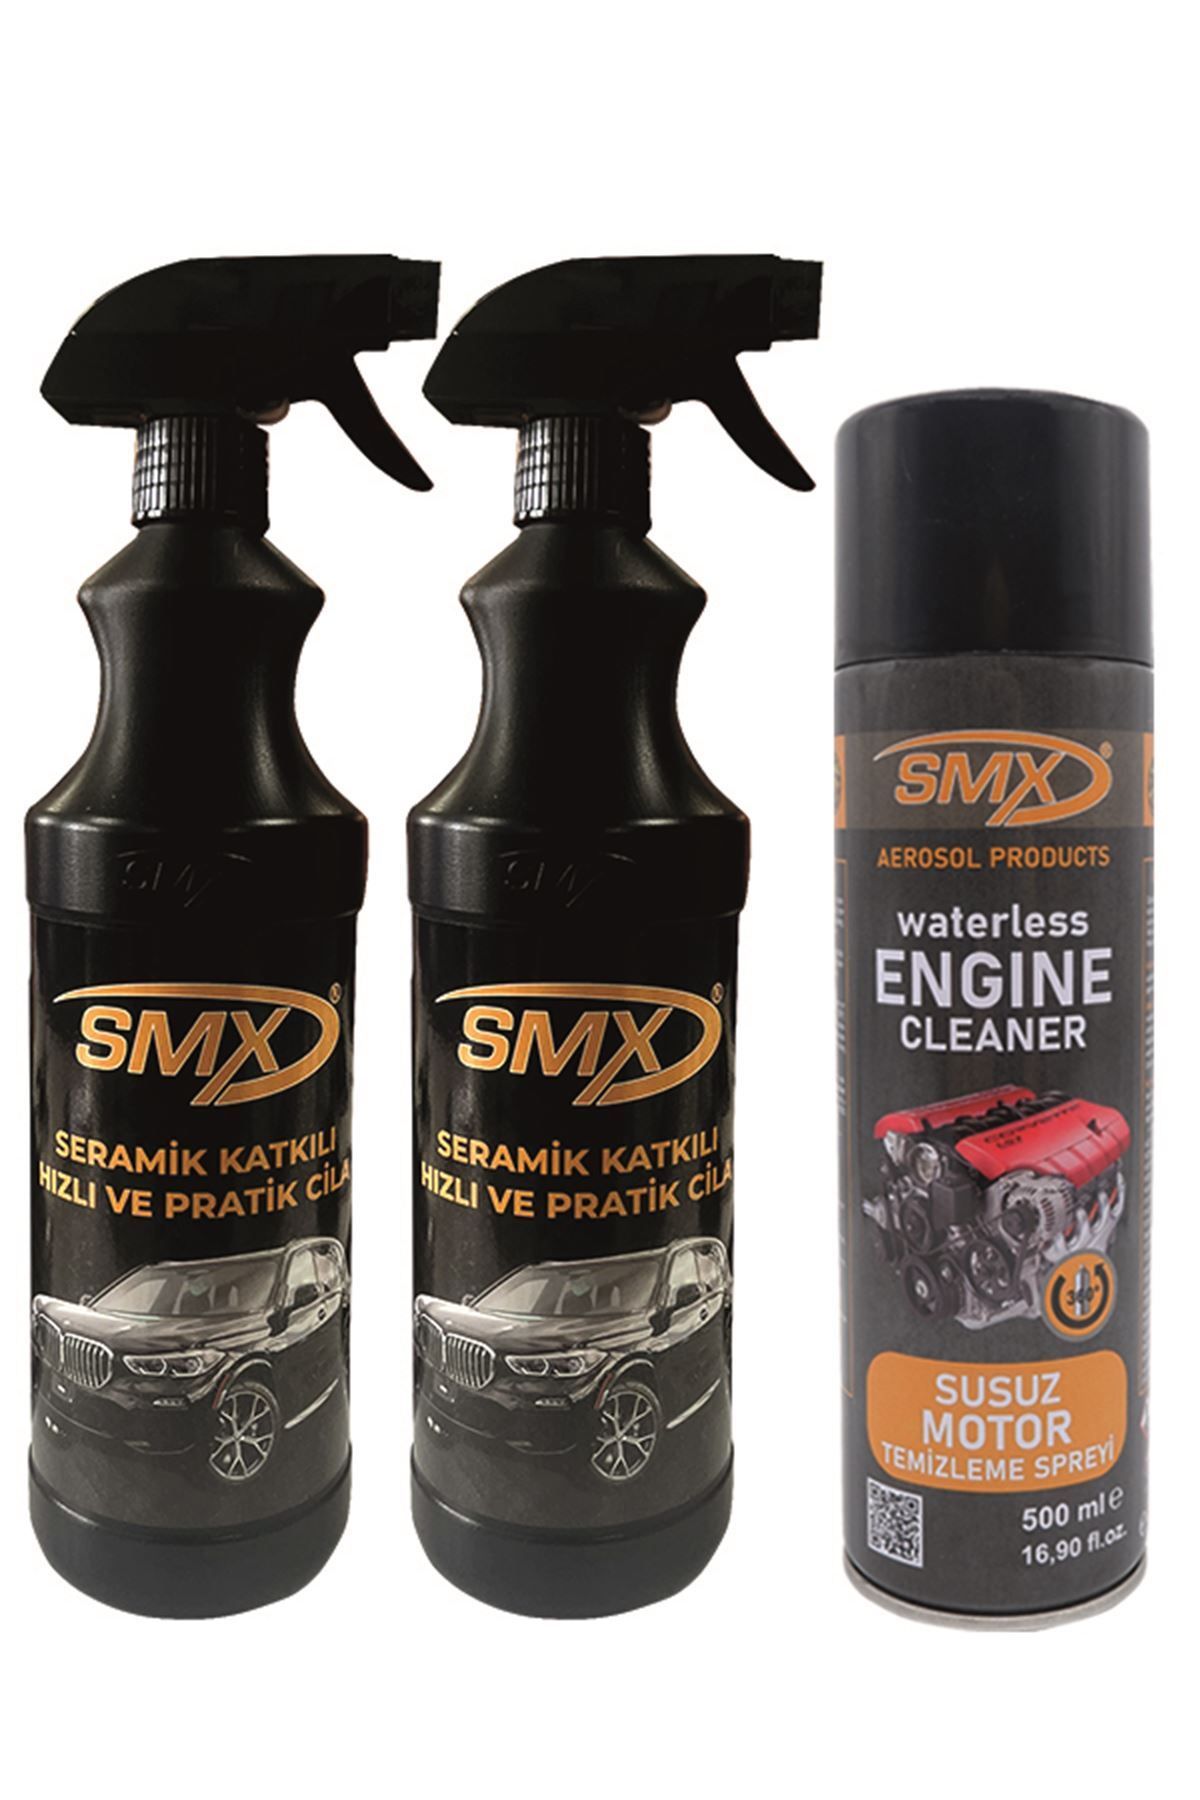 SMX Seramik Katkılı Hızlı Ve Pratik Cila 2 Lt. - Susuz Motor Temizleme Spreyi